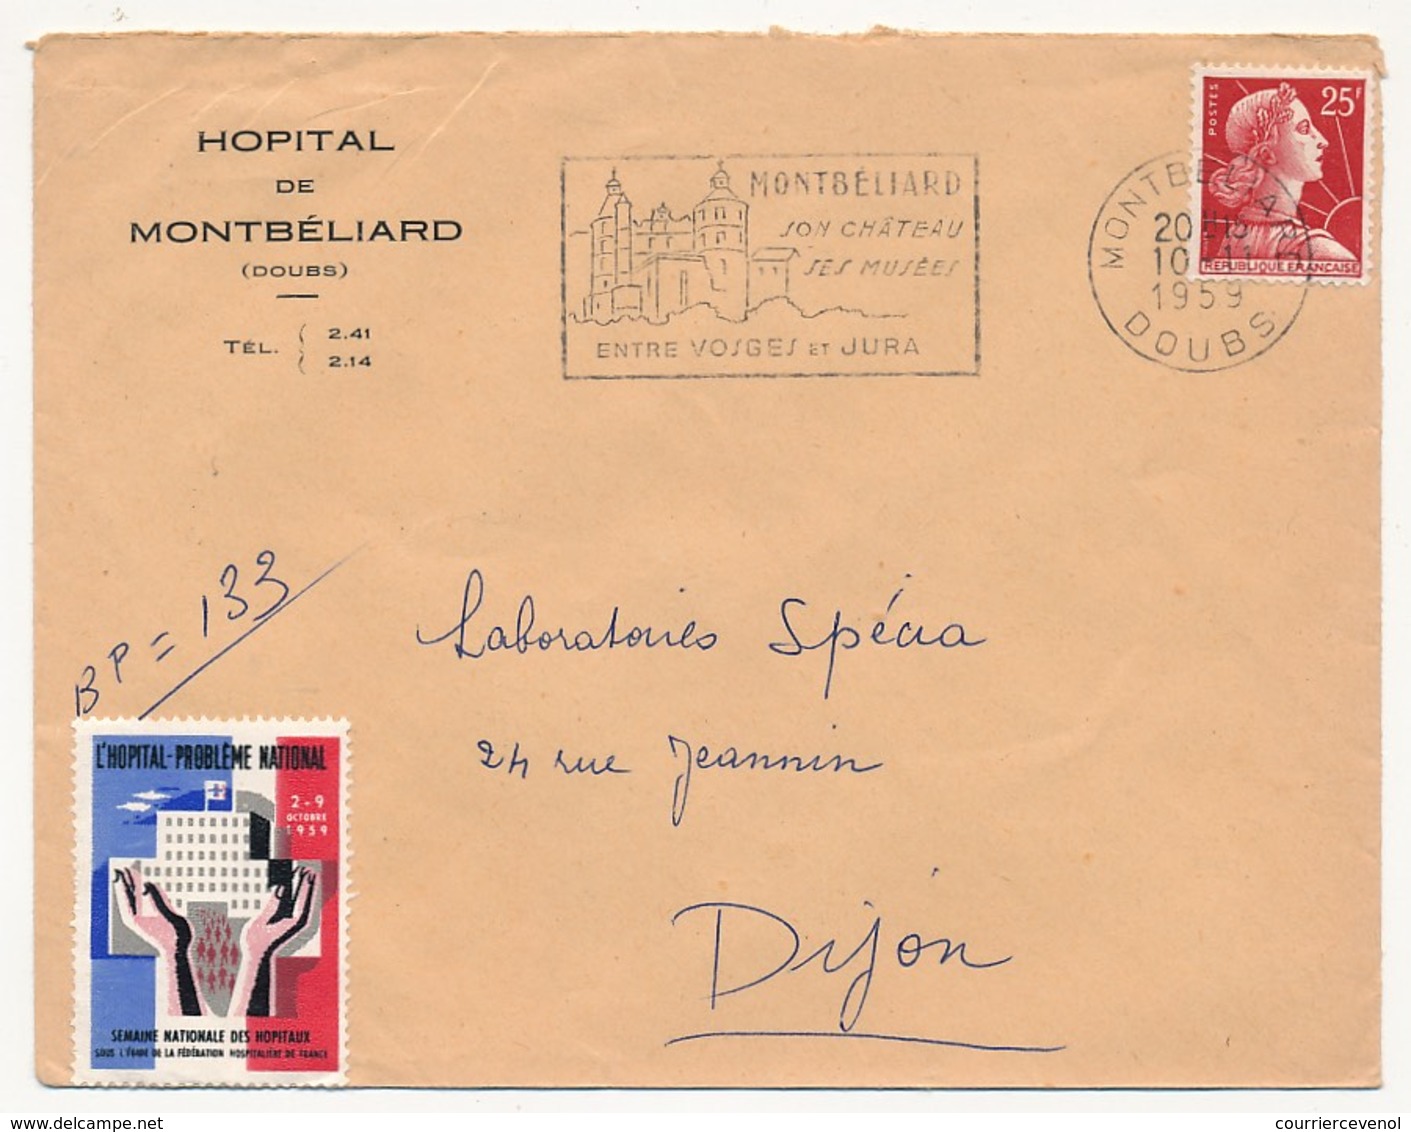 FRANCE - Enveloppe Affr 25F Muller Avec Vignette "L'Hopital Problème National" - Hopital De Montbéliard (Doubs) 1959 - Lettres & Documents